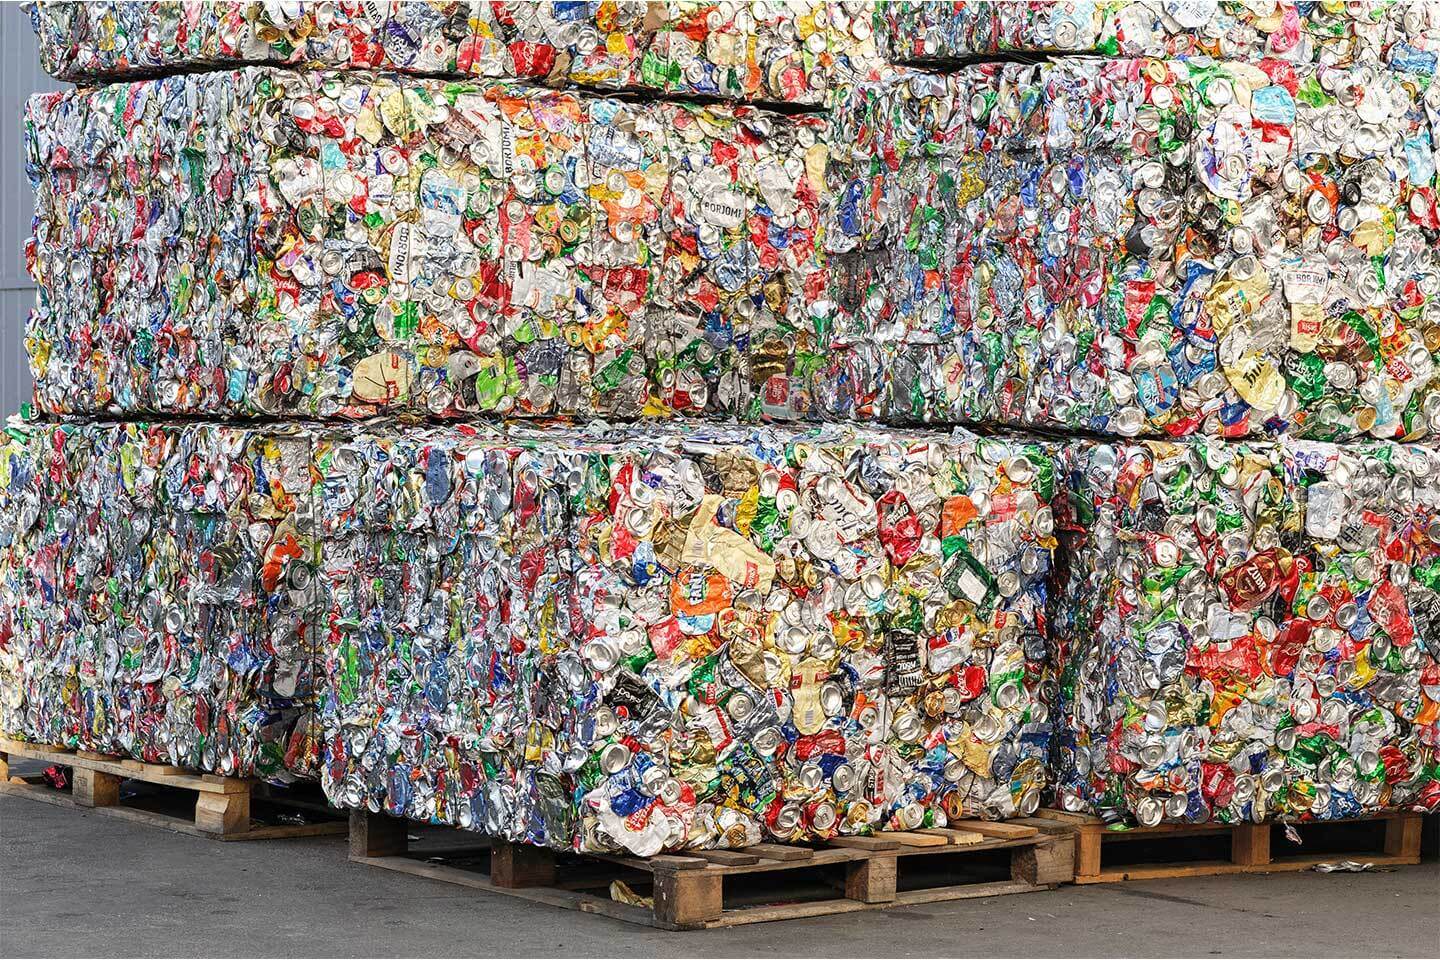 Reciklaža sekundarnih sirovina – reciklaža bakra